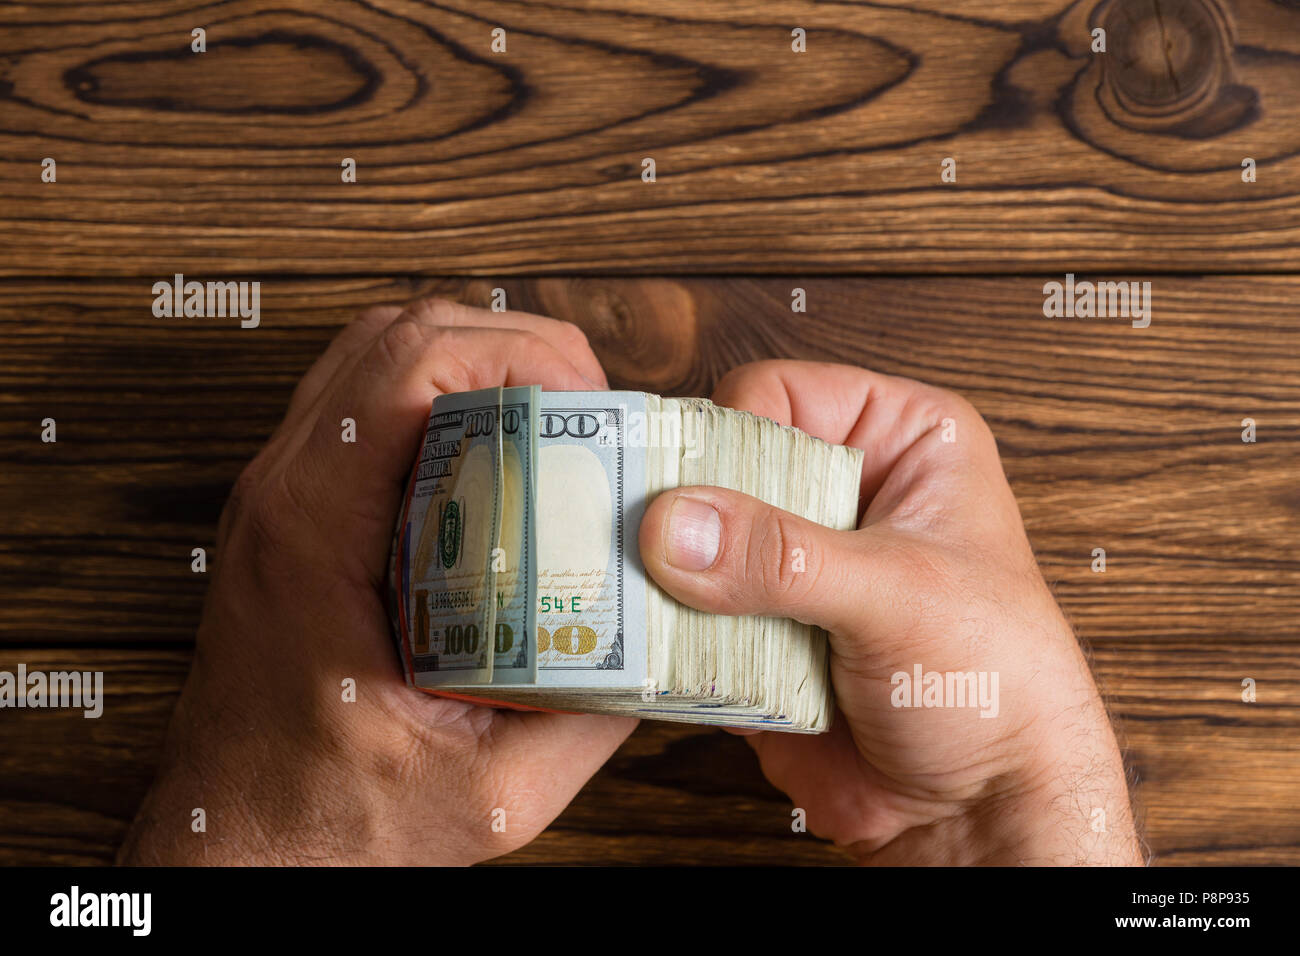 Contrôle de l'homme une épaisse pile de 100 dollar bills feuilleter sur une table en bois rustique avec copie espace Banque D'Images